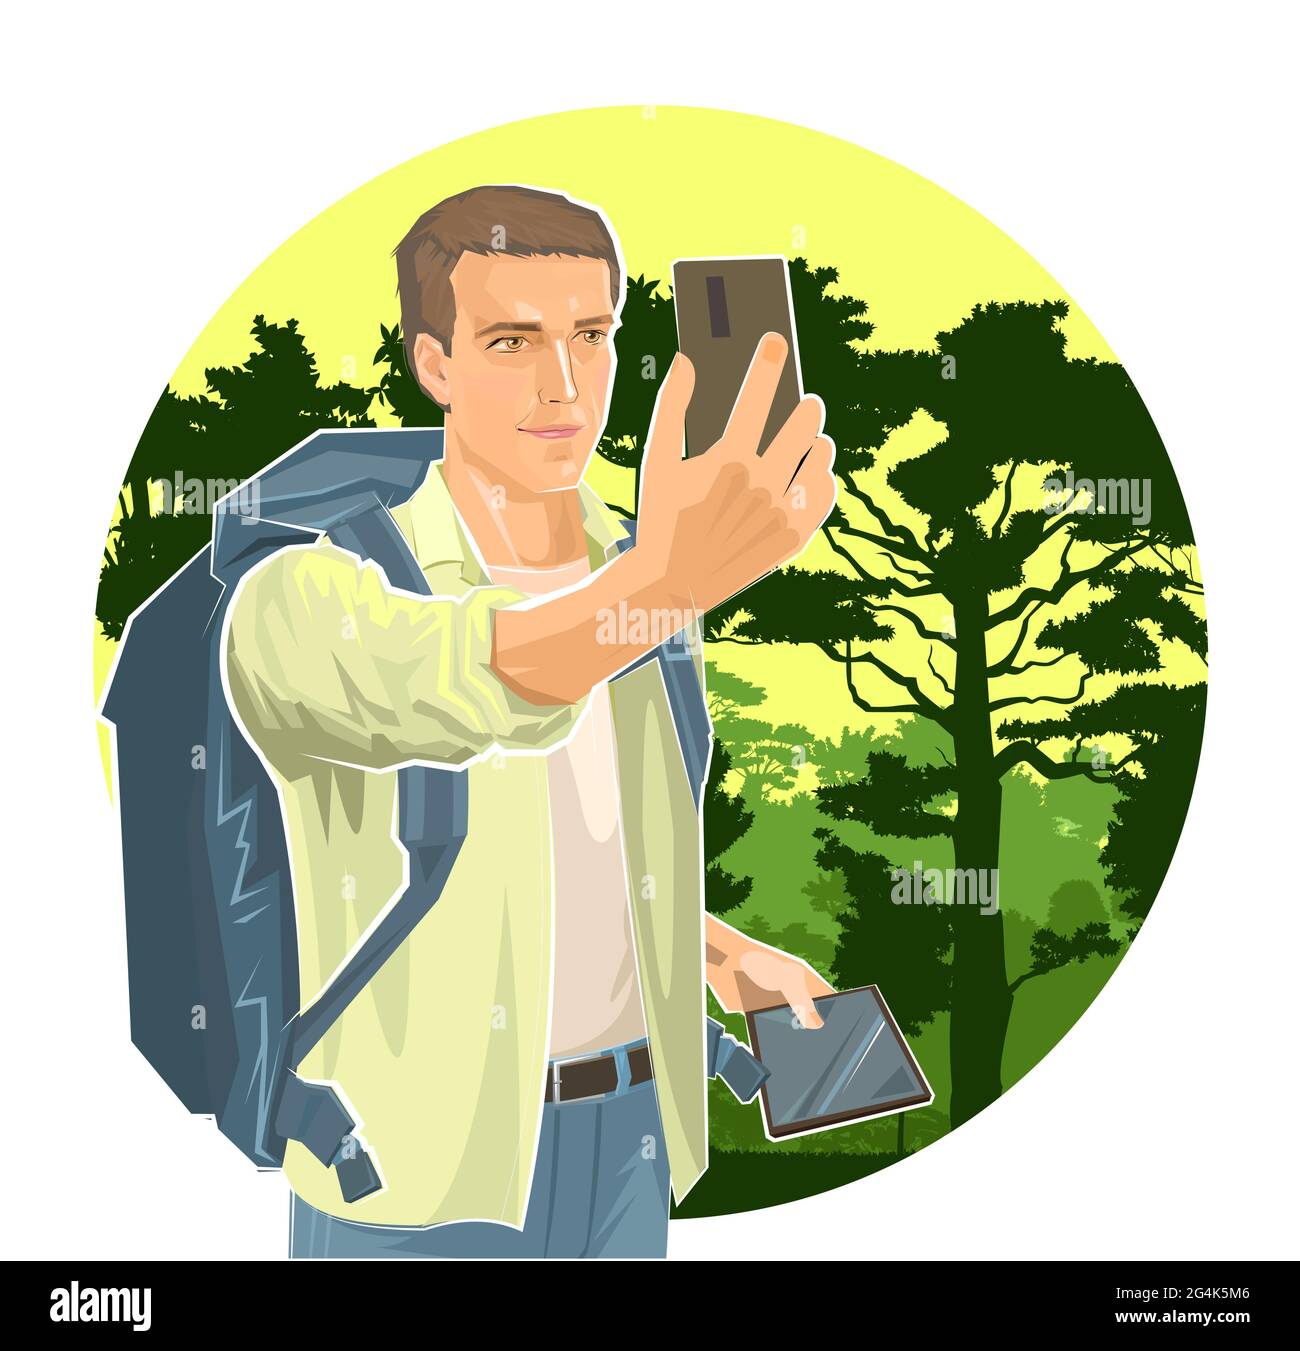 Selfie. Netter Junge Tourist mit Smartphone und Tablet. Rucksack. Vor dem Hintergrund der Landschaft. Wald, Bäume. Ein Mann auf einer Reise. Flacher Style. Stock Vektor